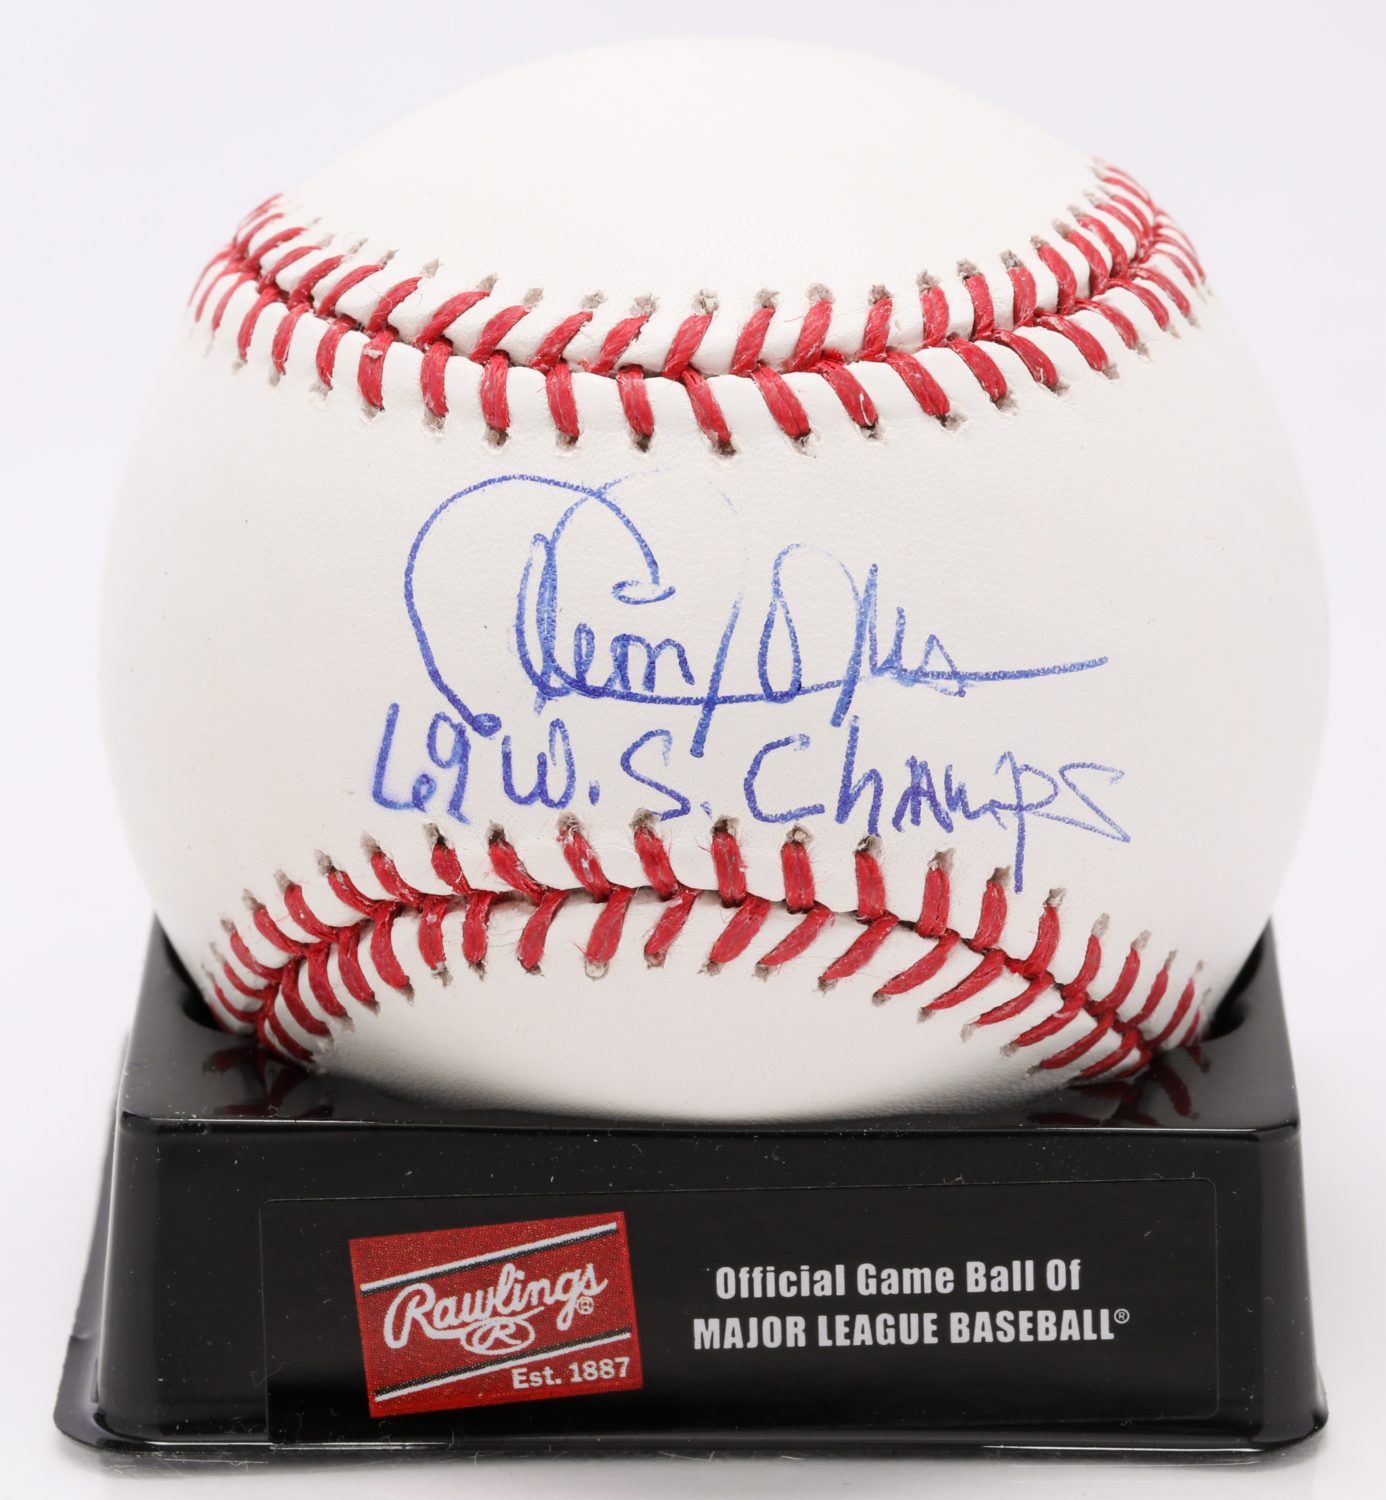 Cleon Jones Autographed Baseball - Autograph Detail